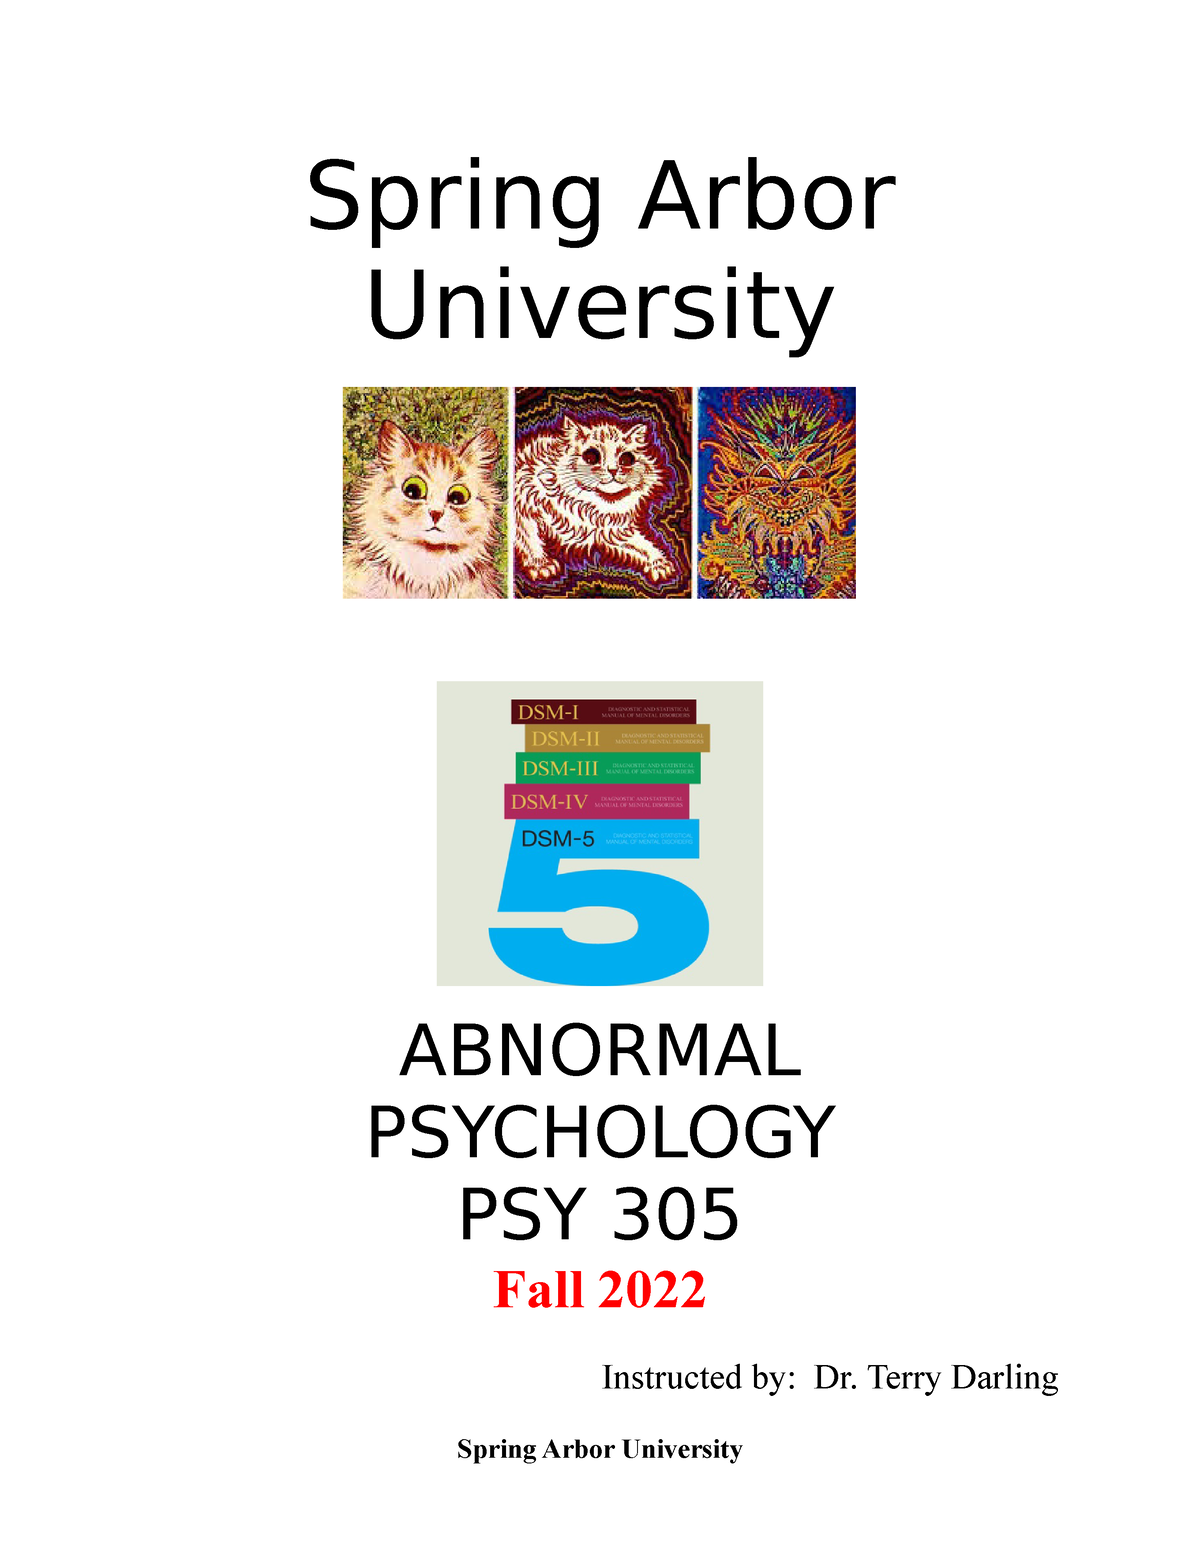 spring-arbor-university-s-msw-program-to-offer-virtual-model-for